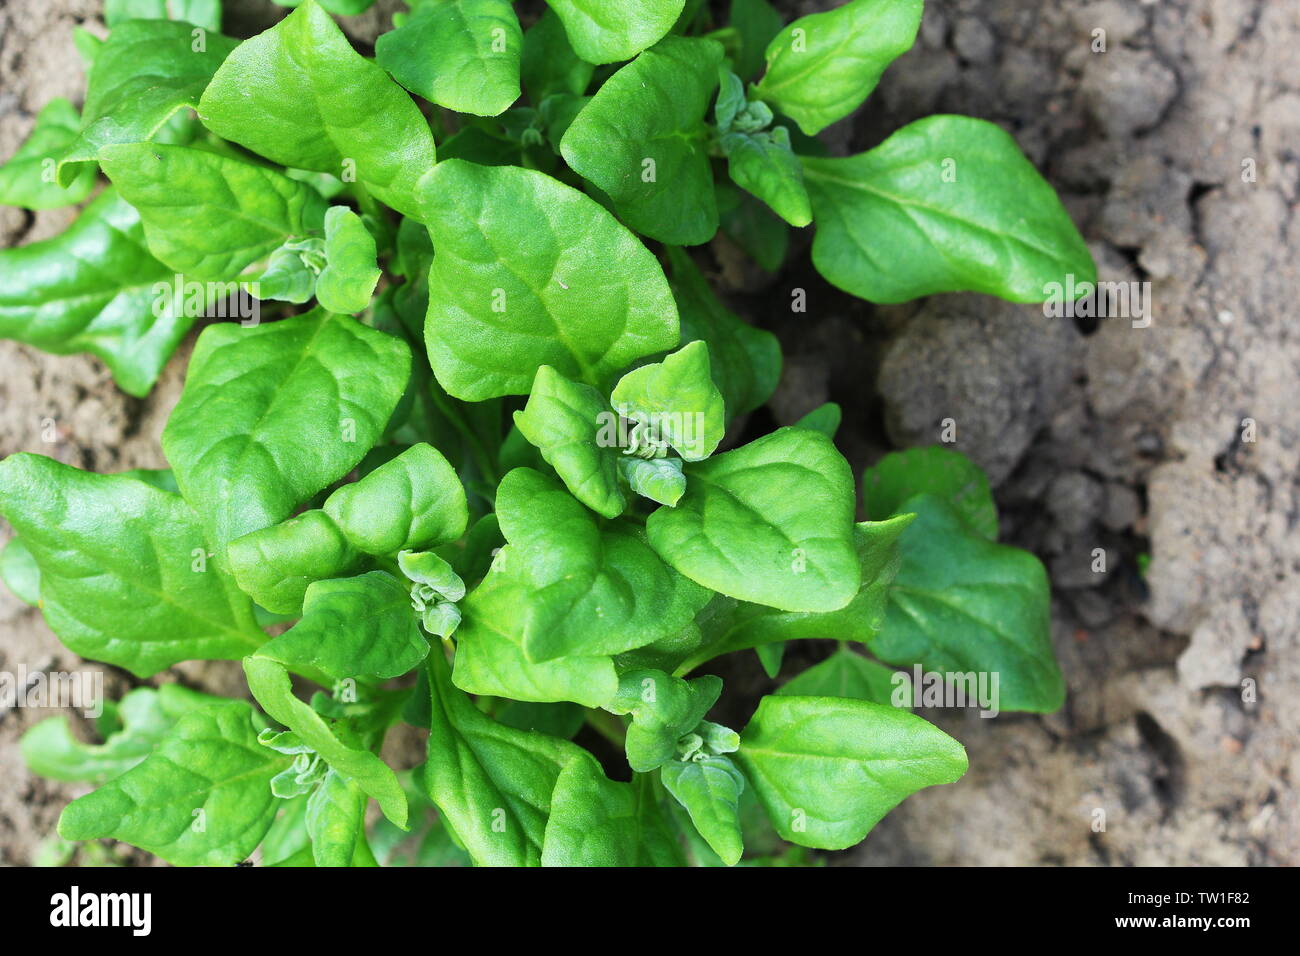 Tetragonia tetragonioides, New Zealand spinach growing in garden Stock Photo